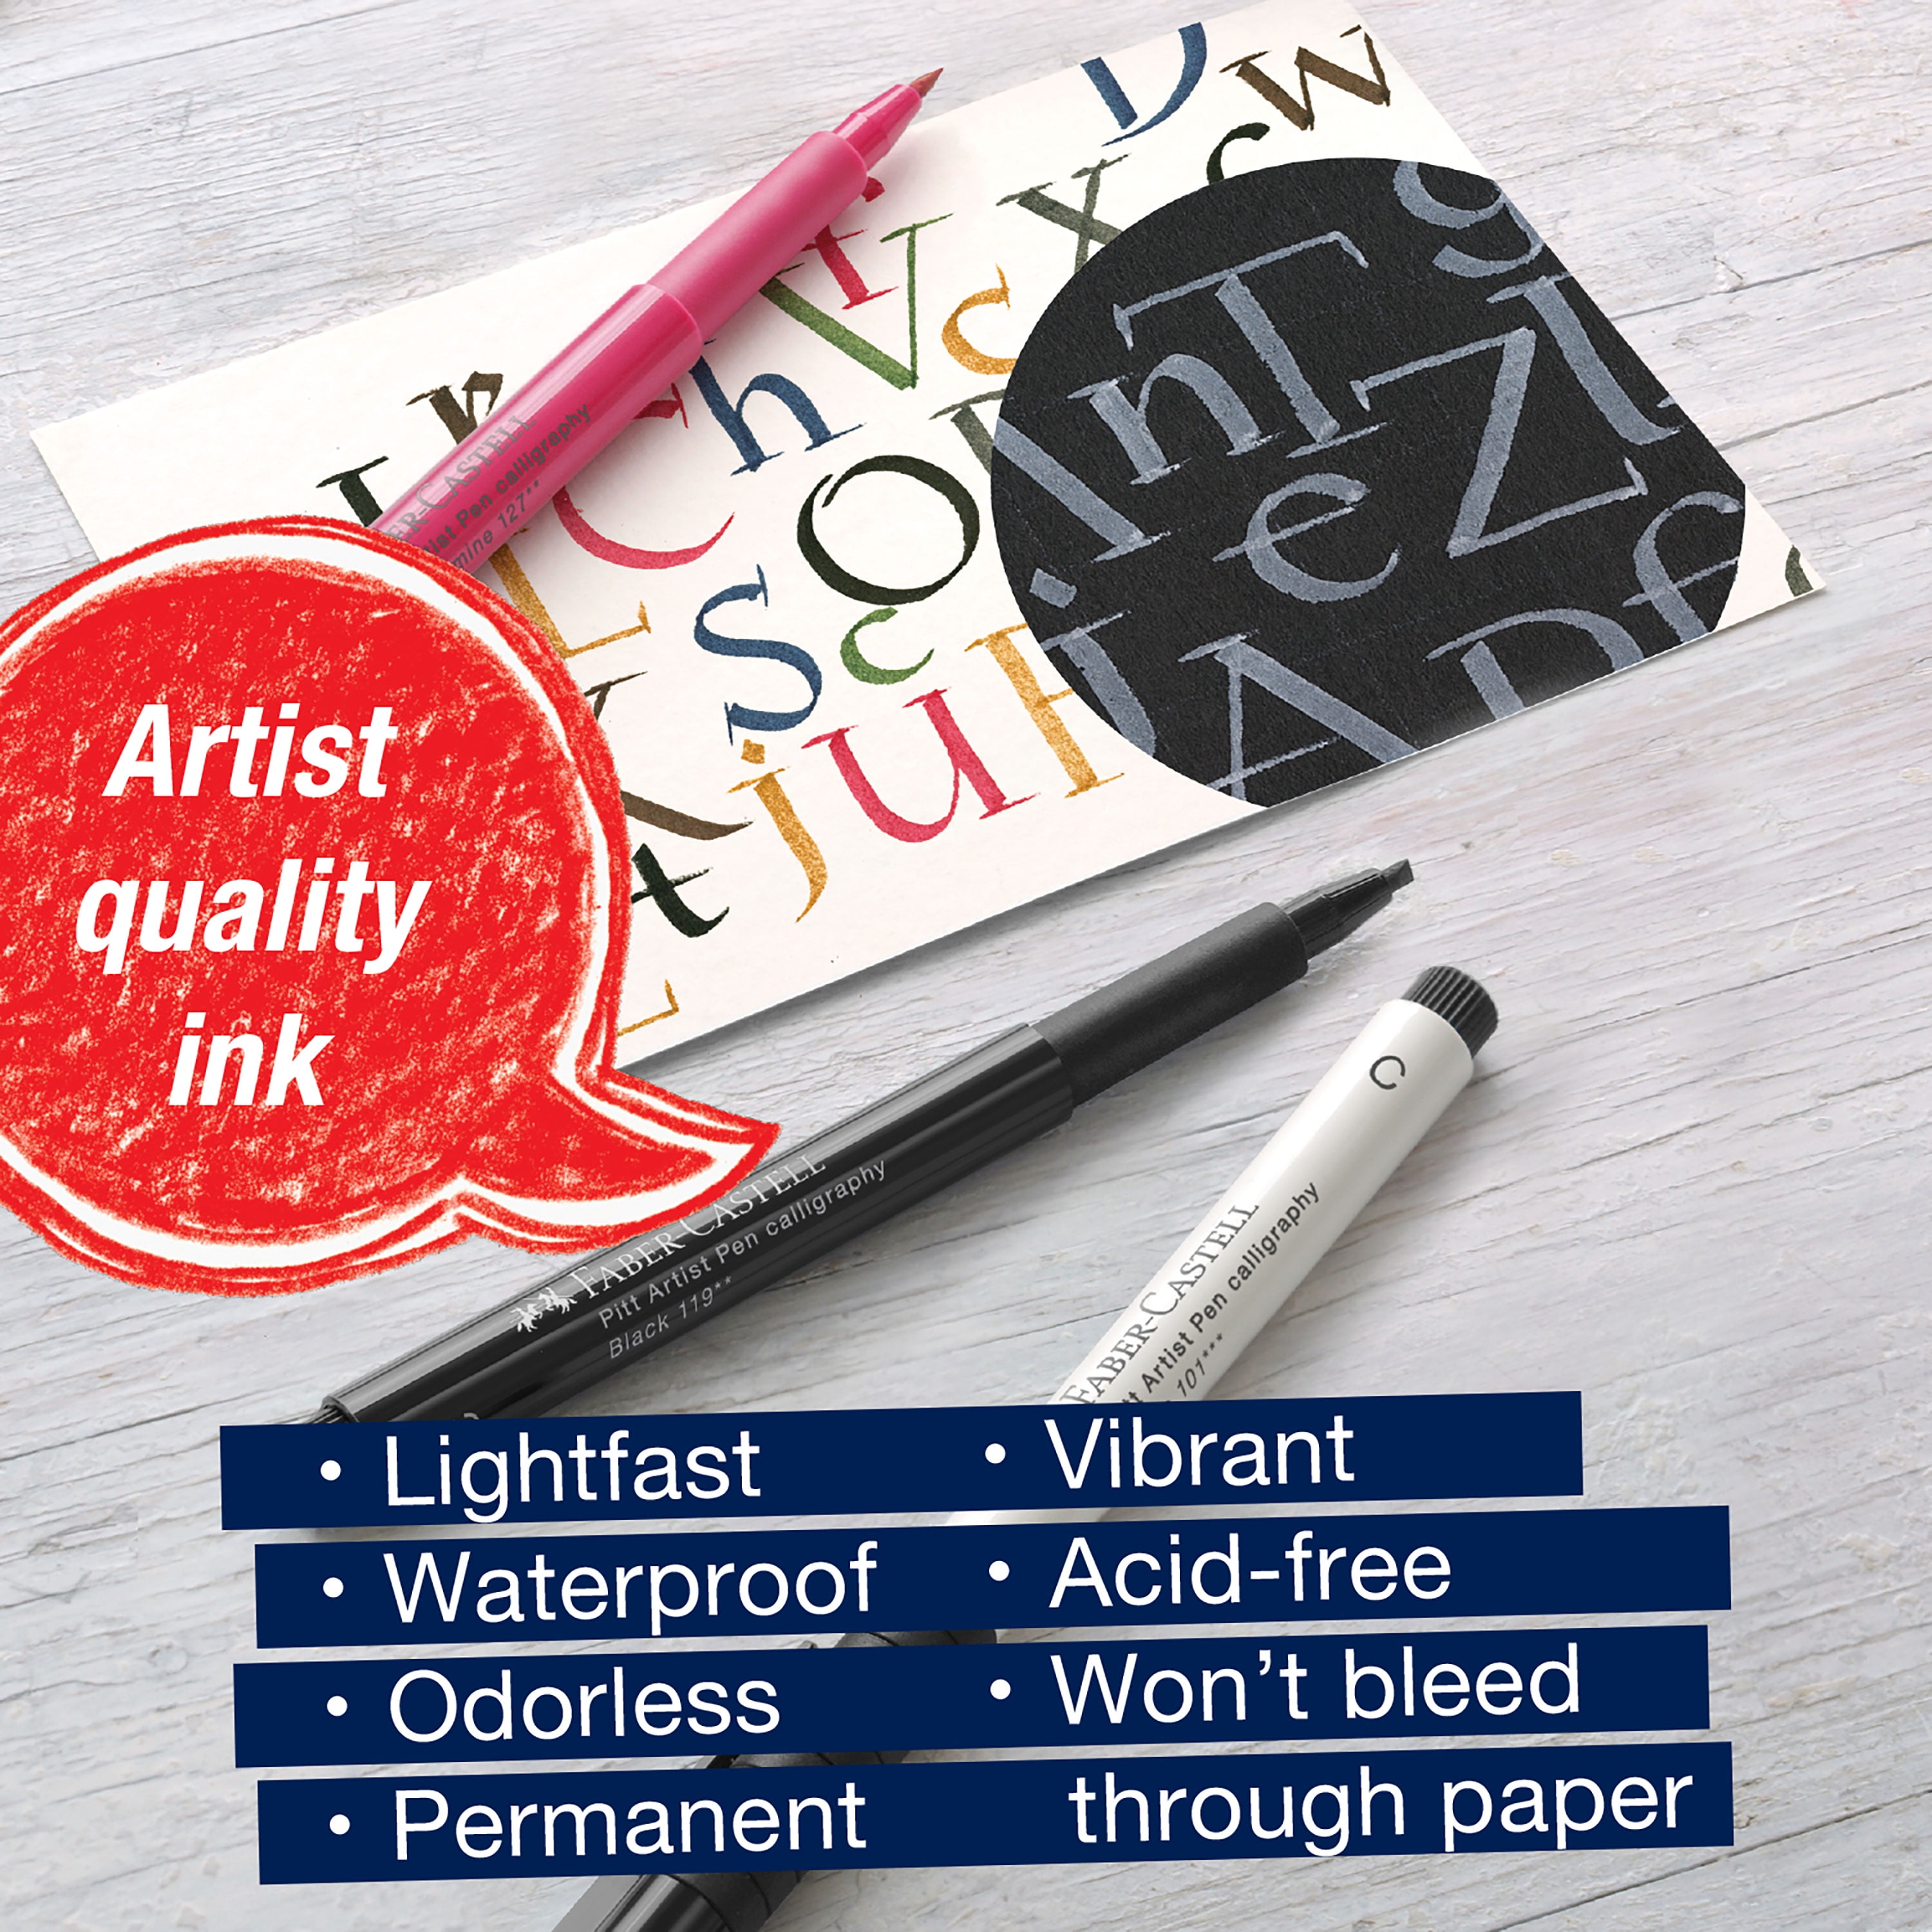 Pitt Artist Pen Beginner Journaling Set - #267125 – Faber-Castell USA